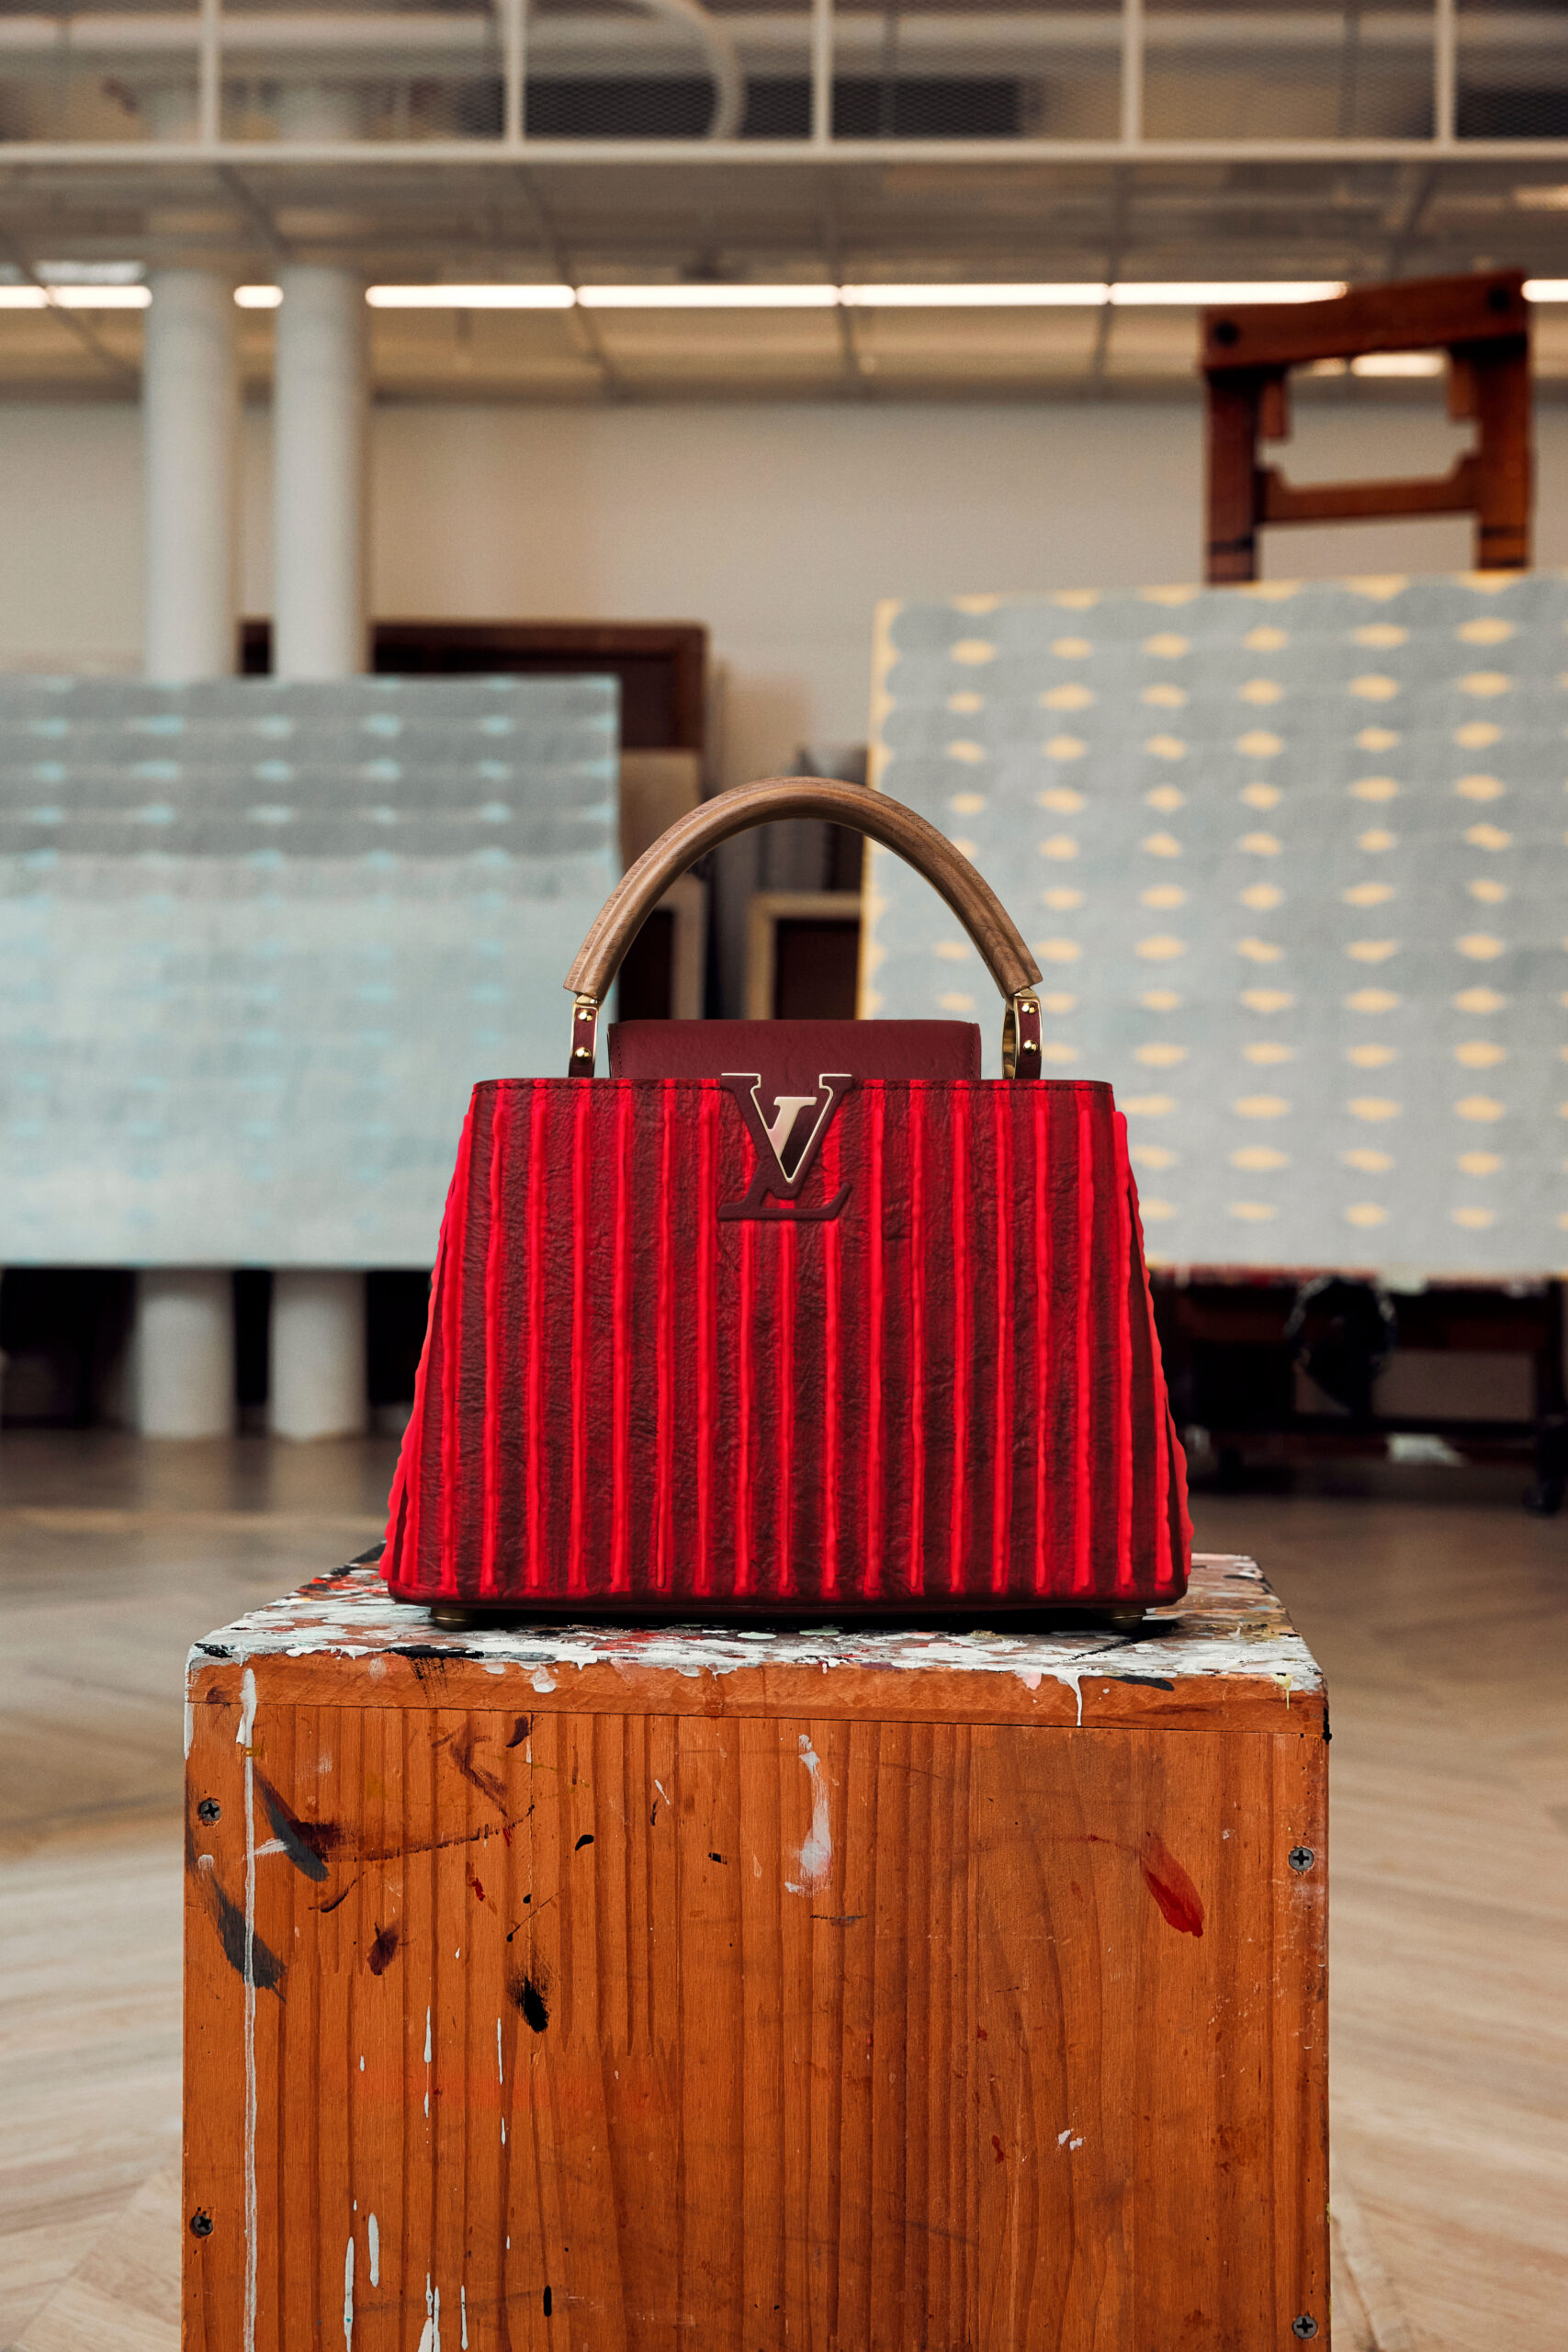 Louis Vuitton Unveils Virgil Abloh's Pre-Fall 2022 Collection Daybreak